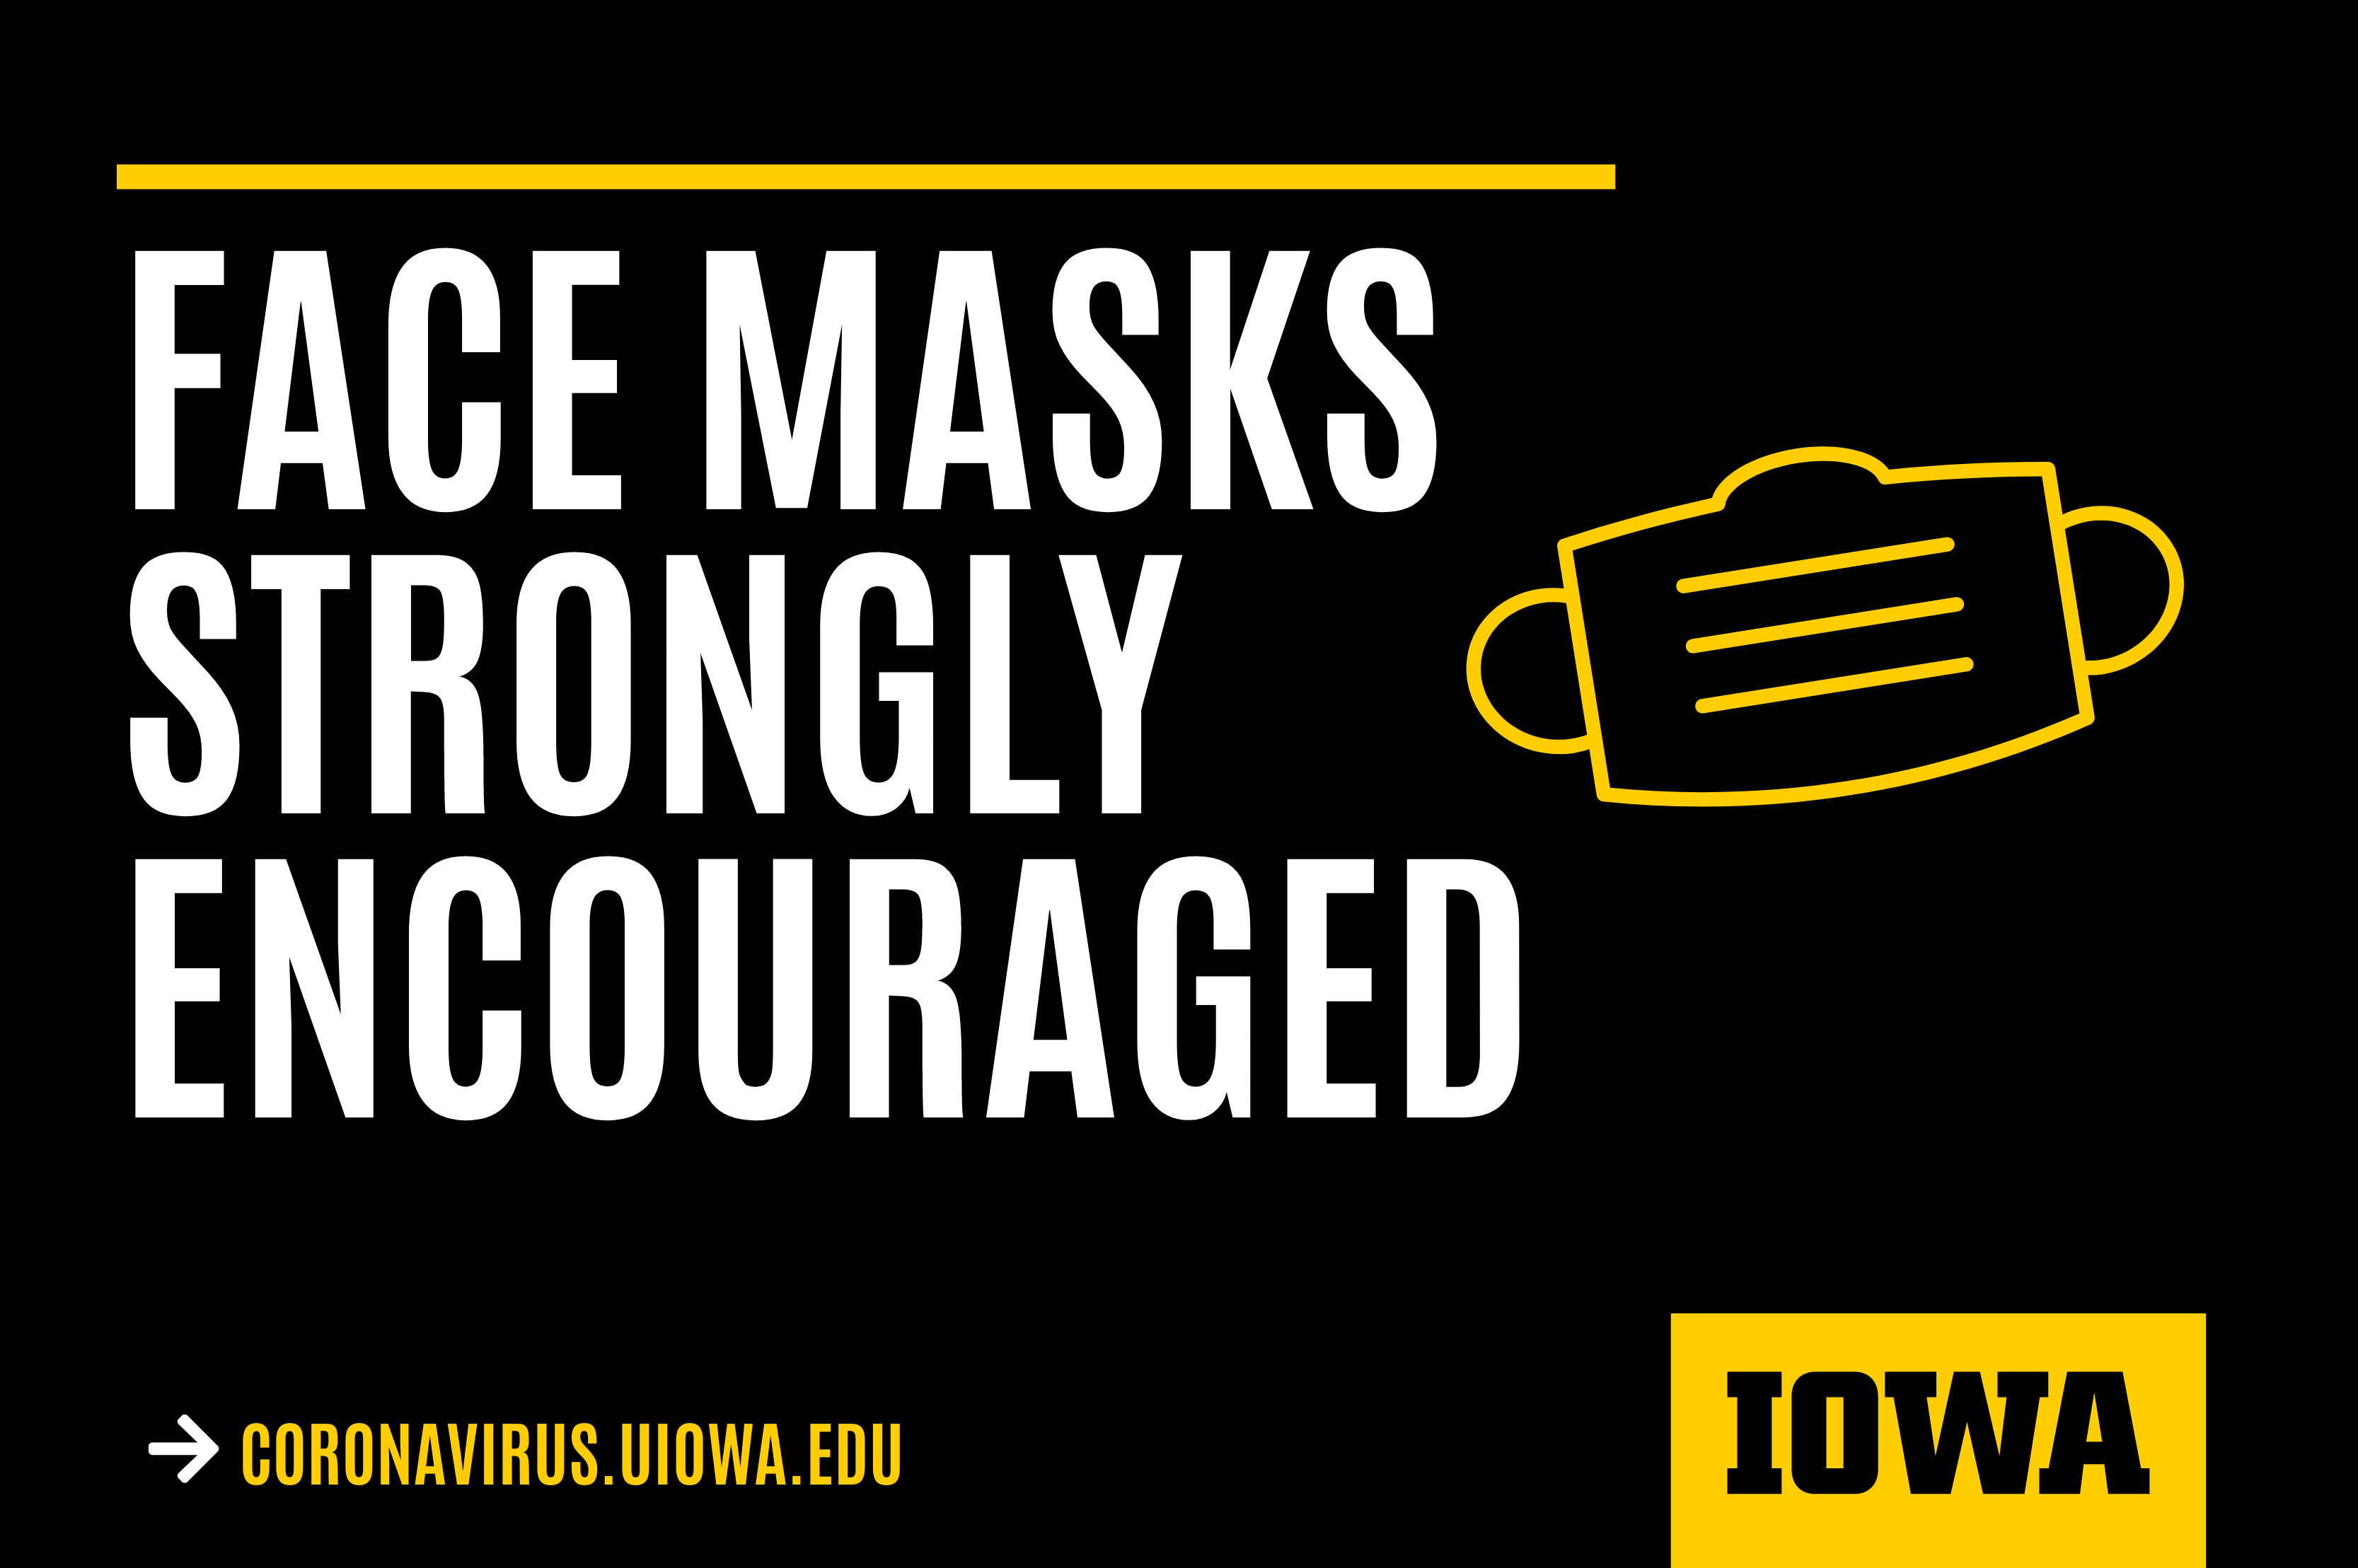 COVID-19 Masks Encouraged